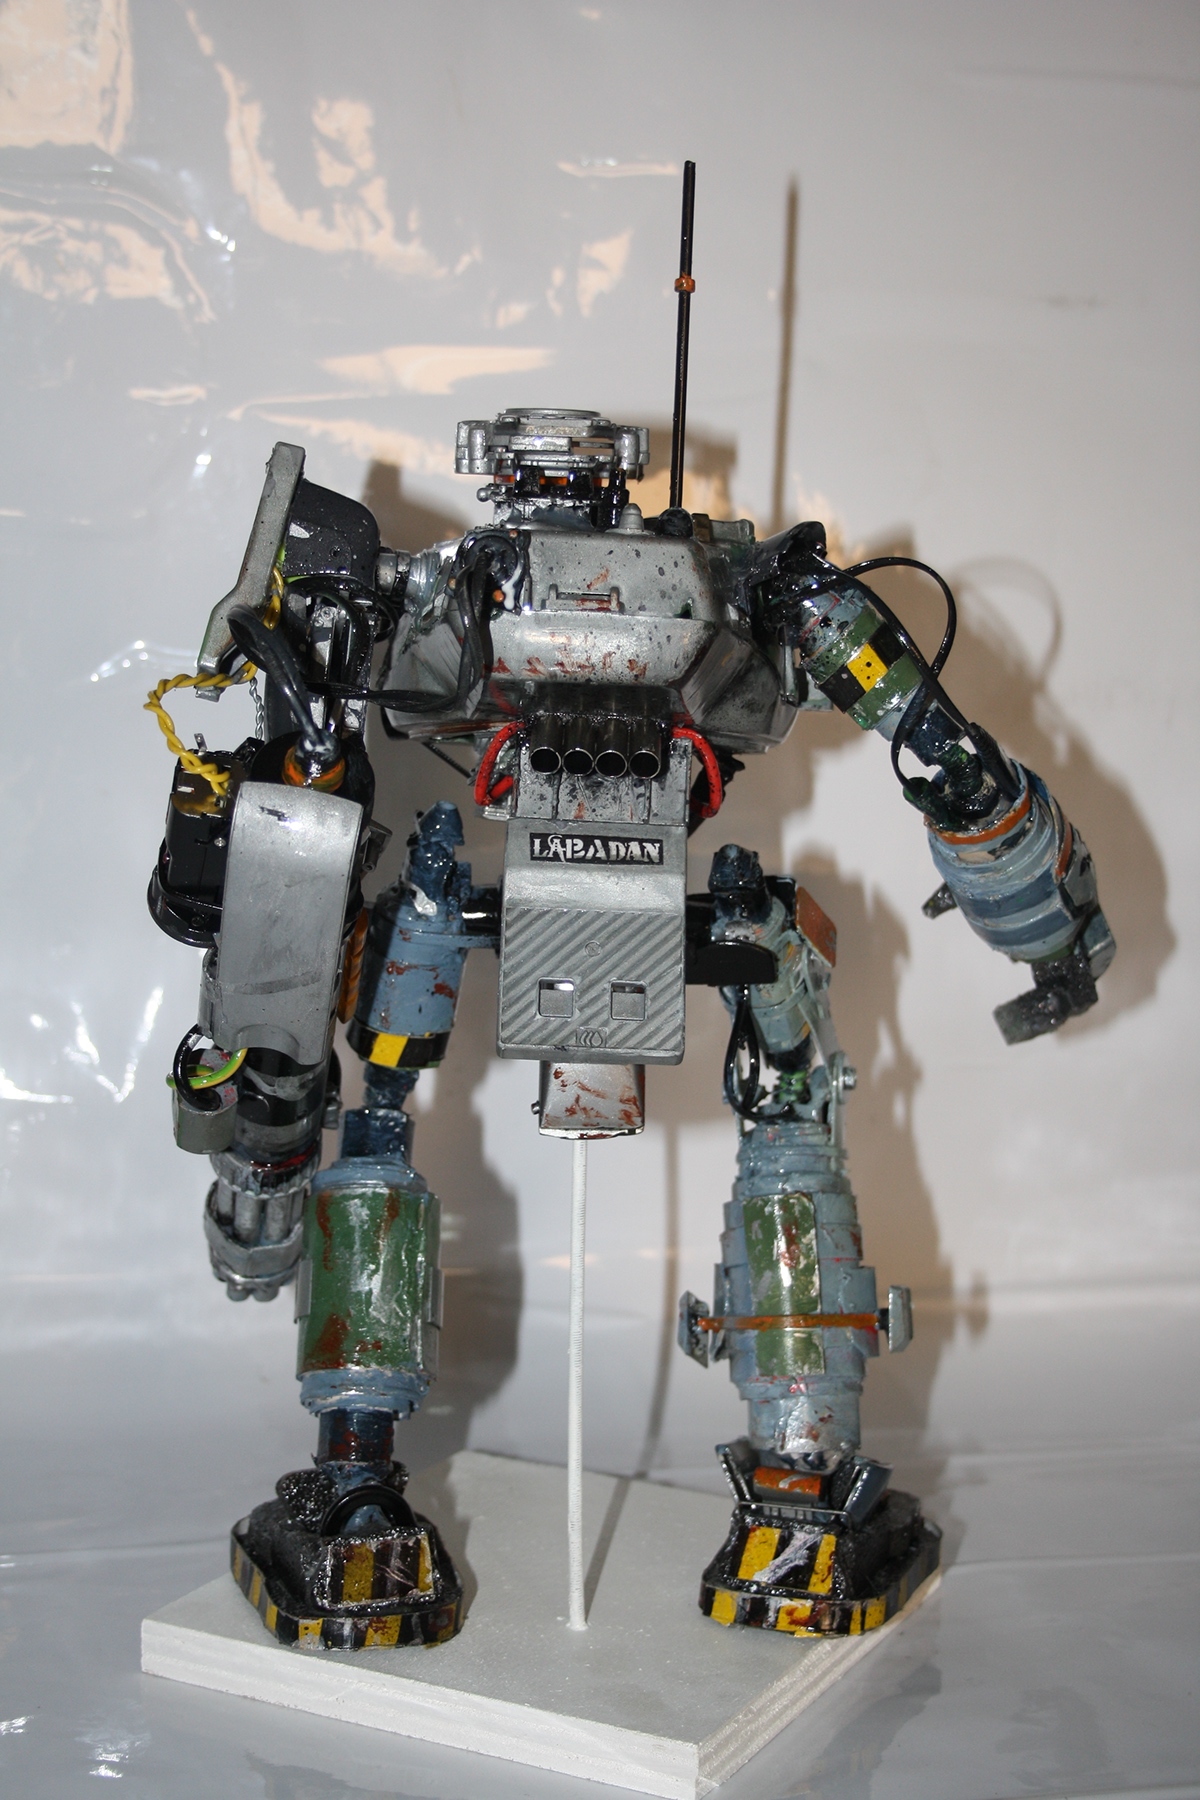 Labadanzky robot handmade scrap material sculpture mecha robot design